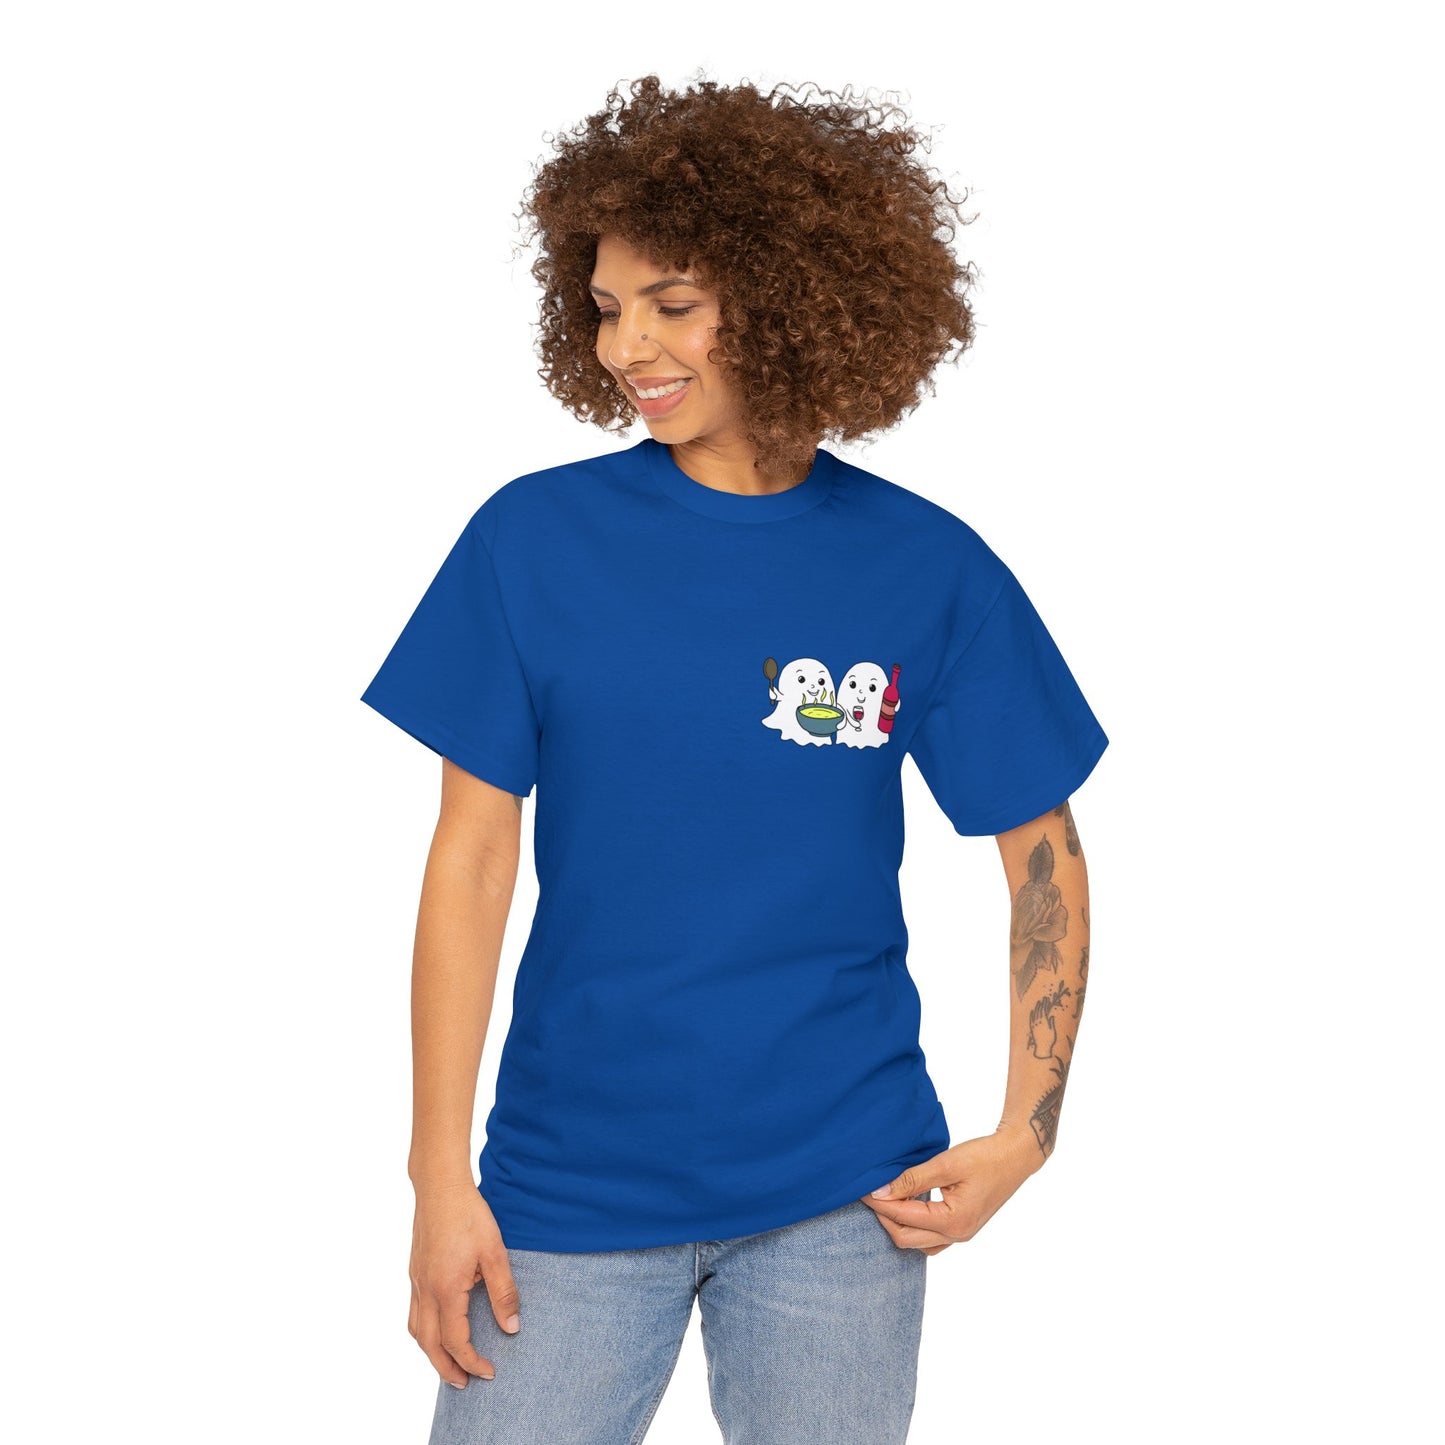 Schwefelgeister T-Shirt (kleines Logo) in allen Farben